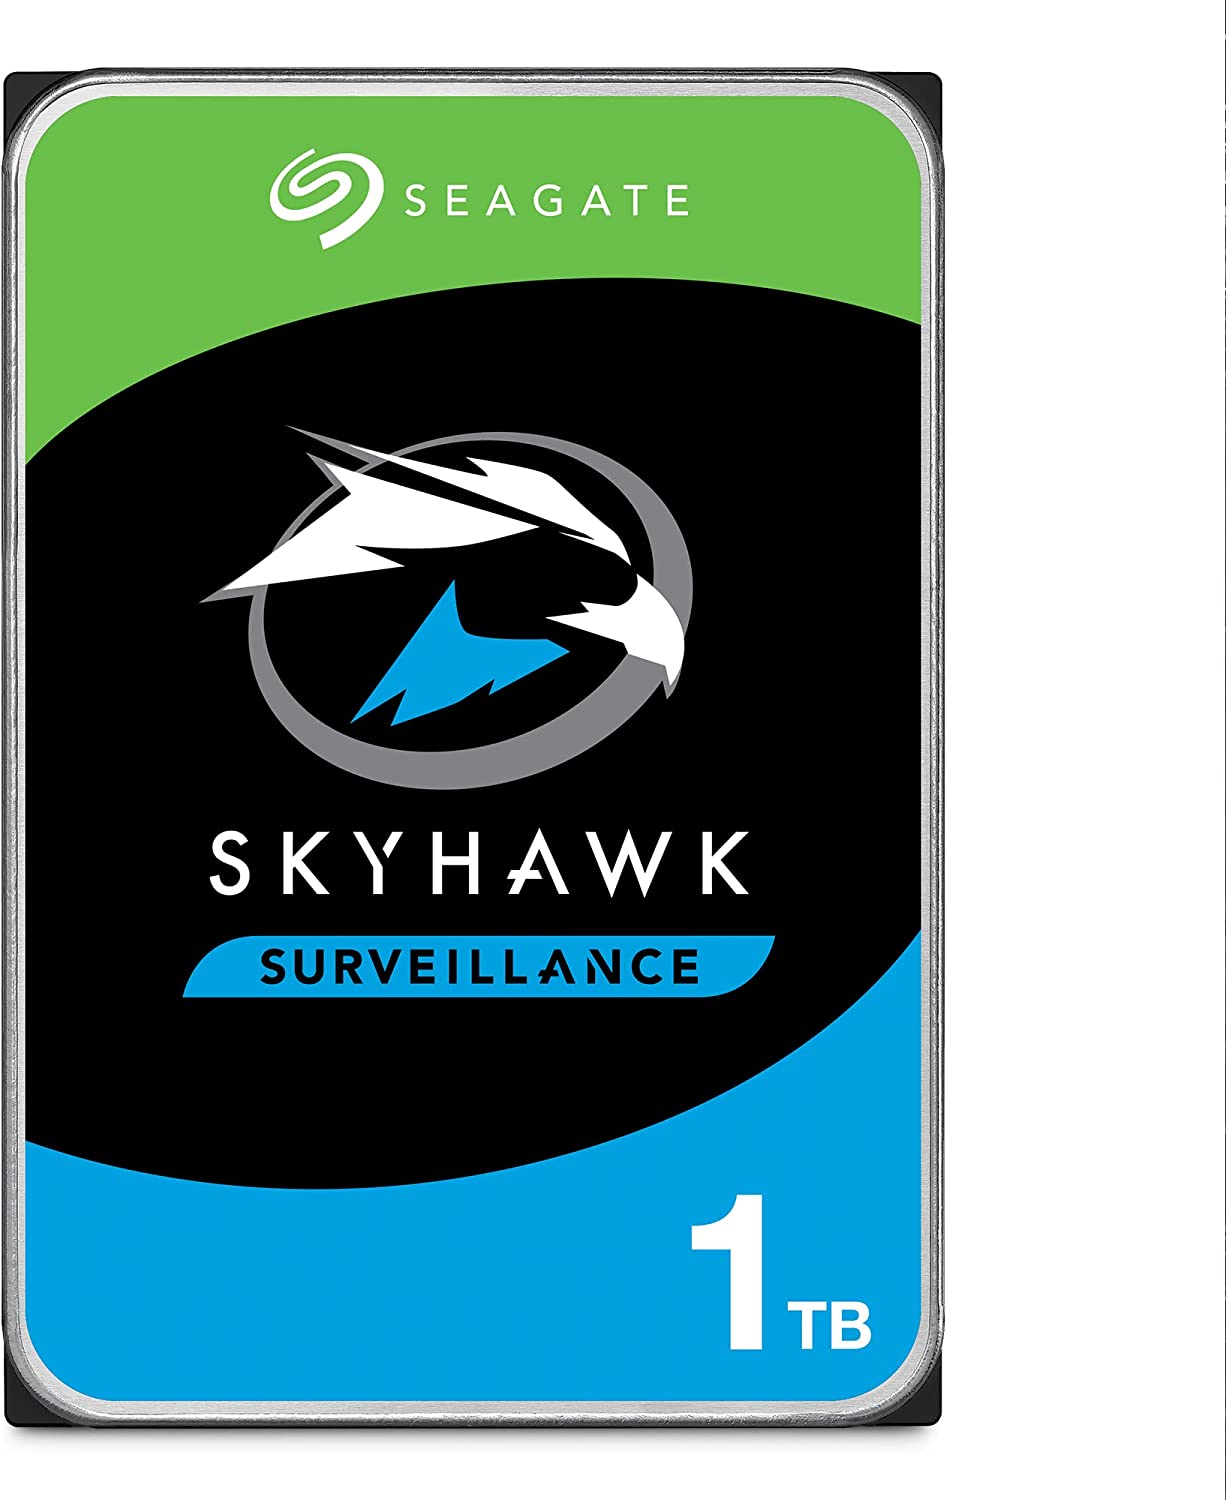 Seagate SkyHawk Surveillance 1TB Hard Drive